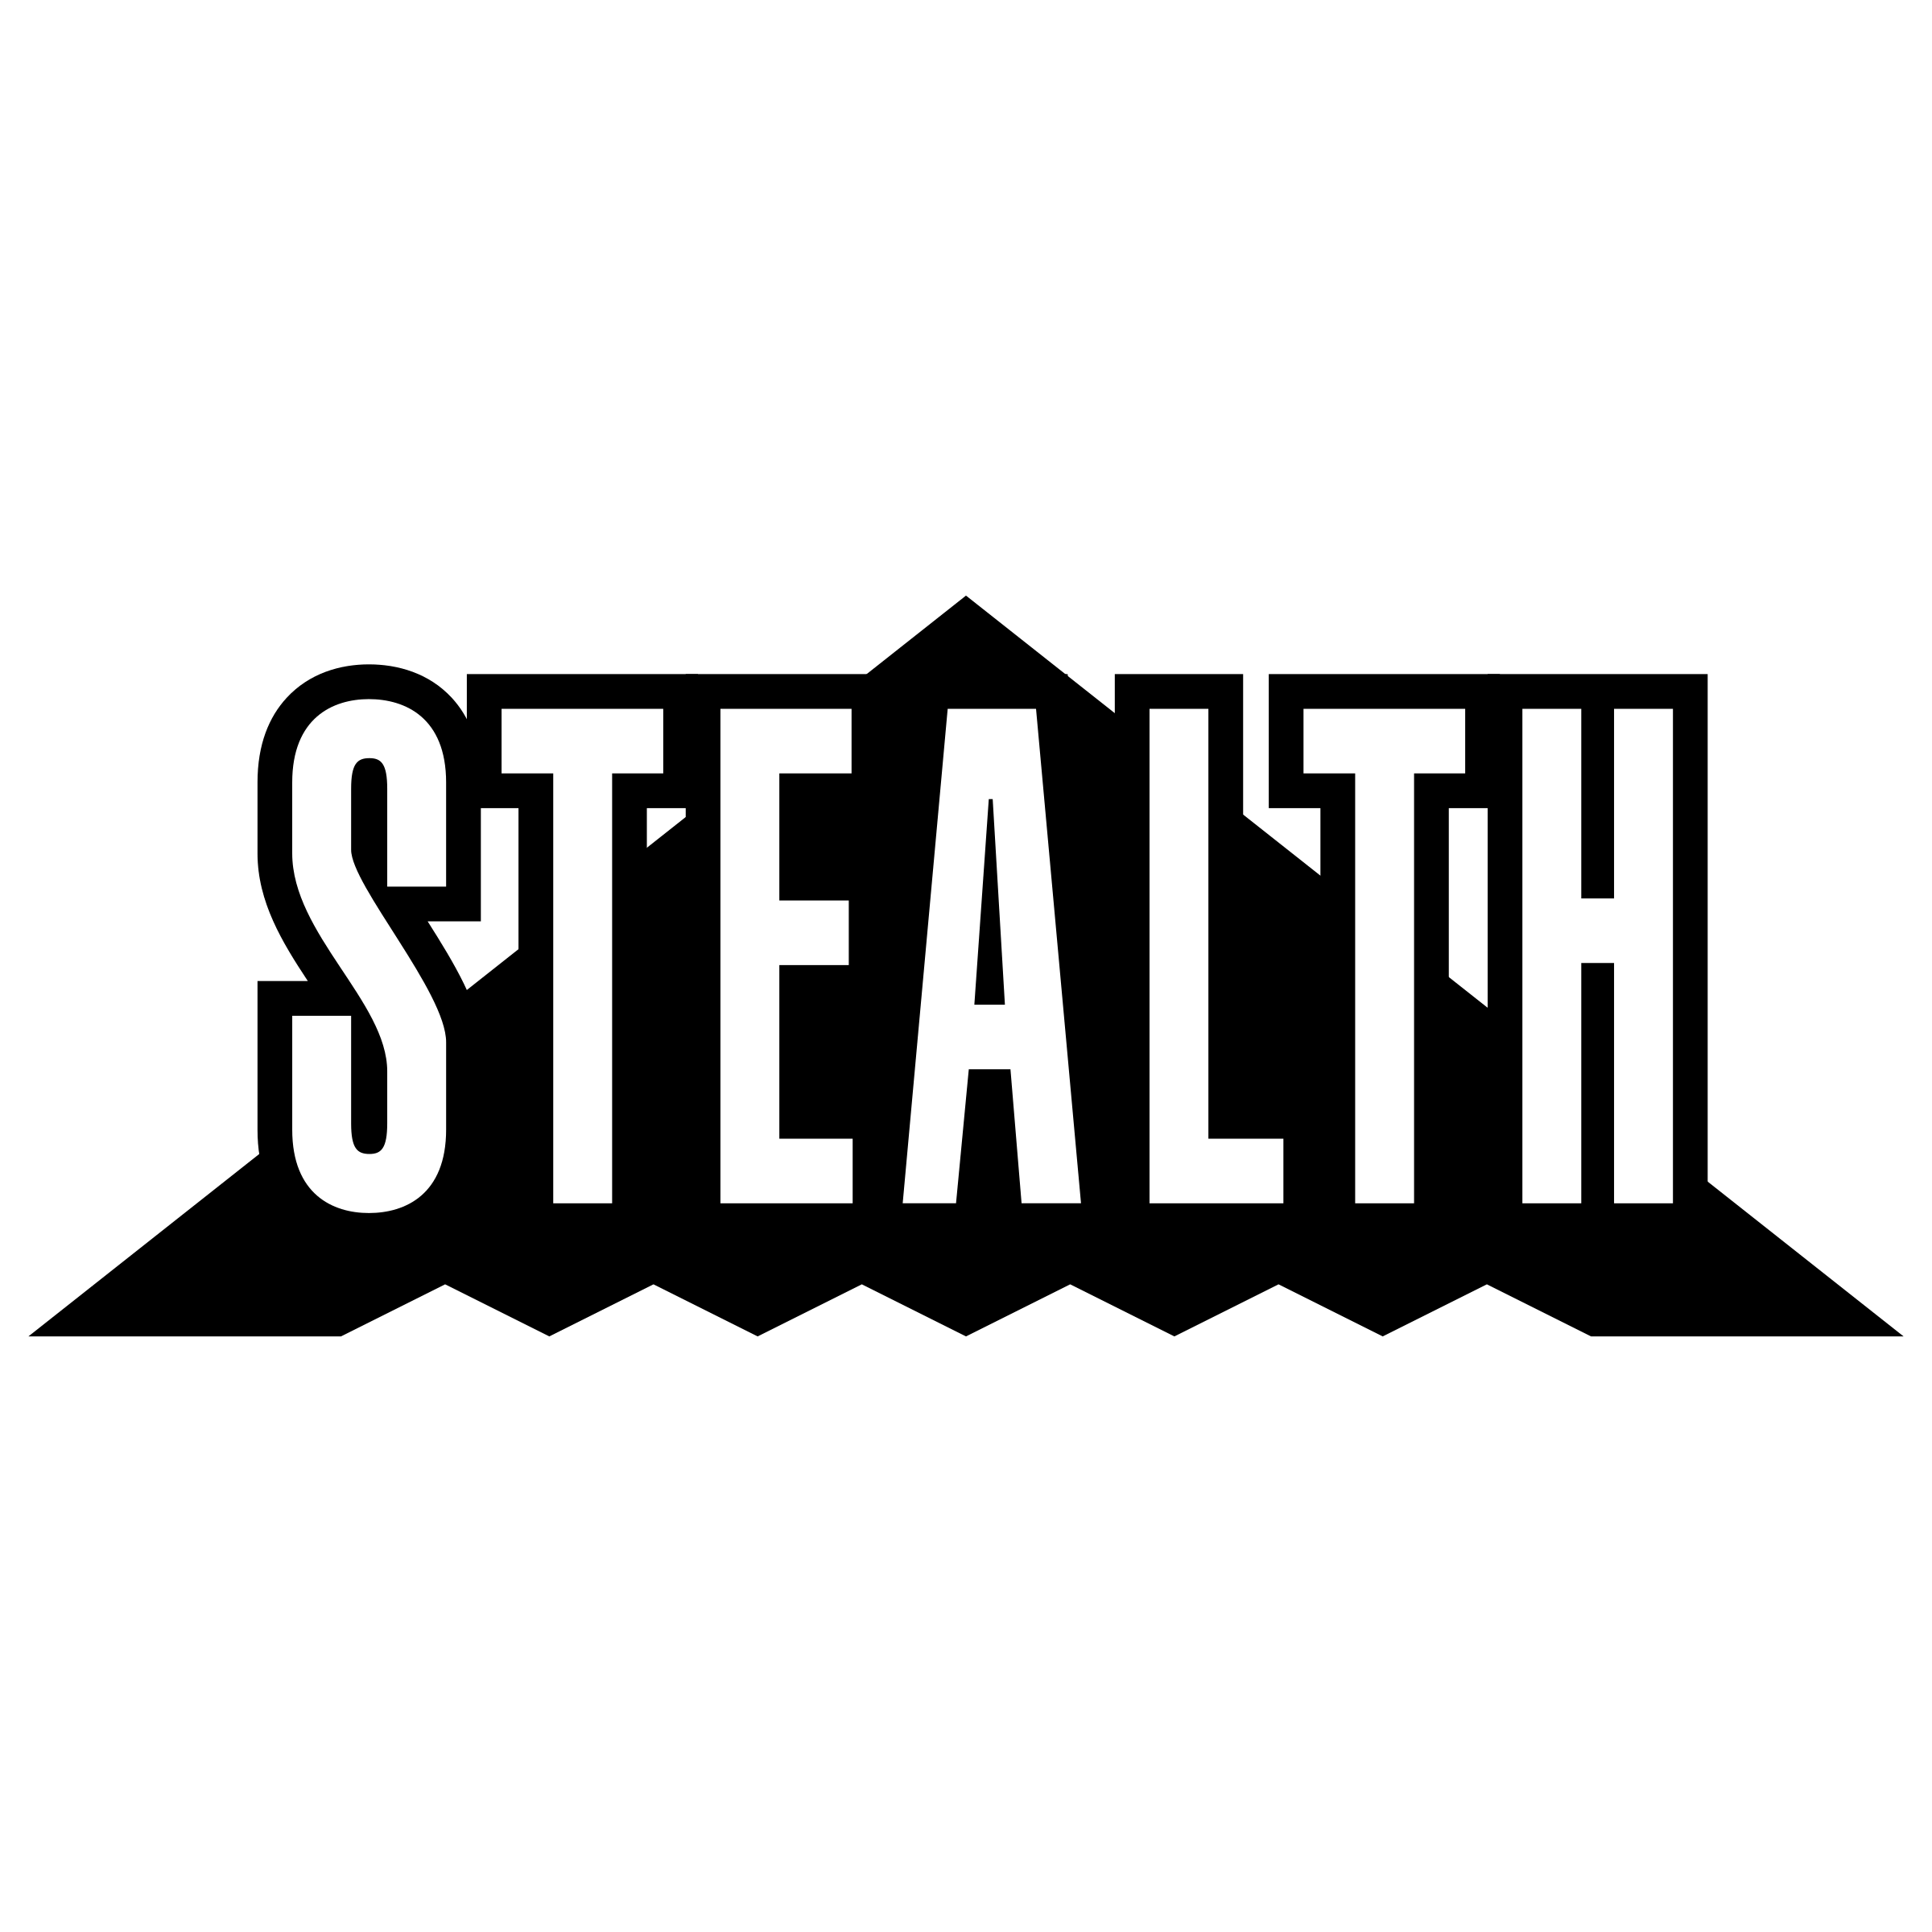 Stealth Logo - Stealth Logo PNG Transparent & SVG Vector - Freebie Supply